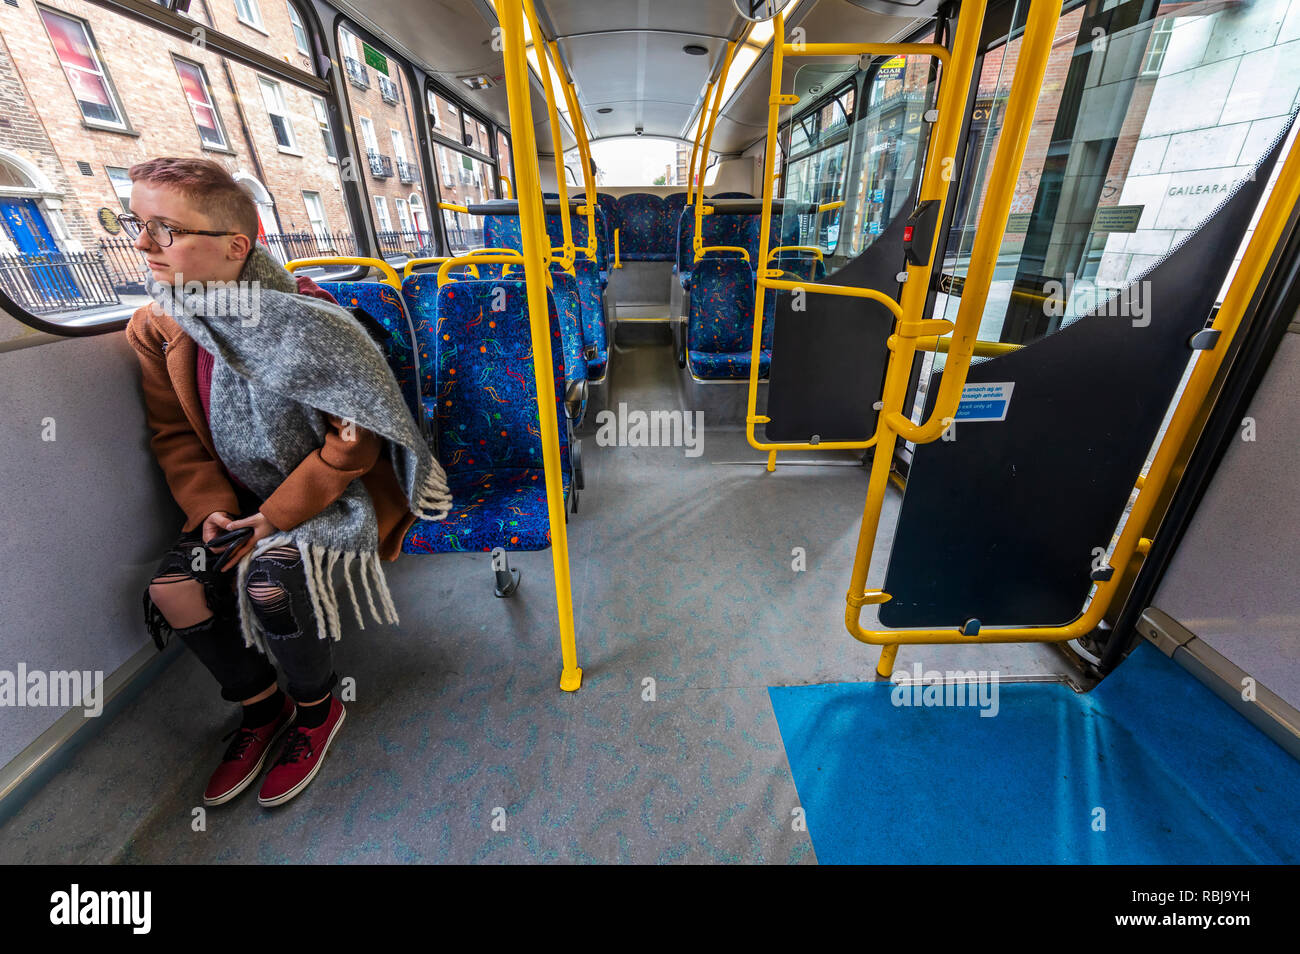 A young woman riding a bus in Dublin, Ireland. Stock Photo